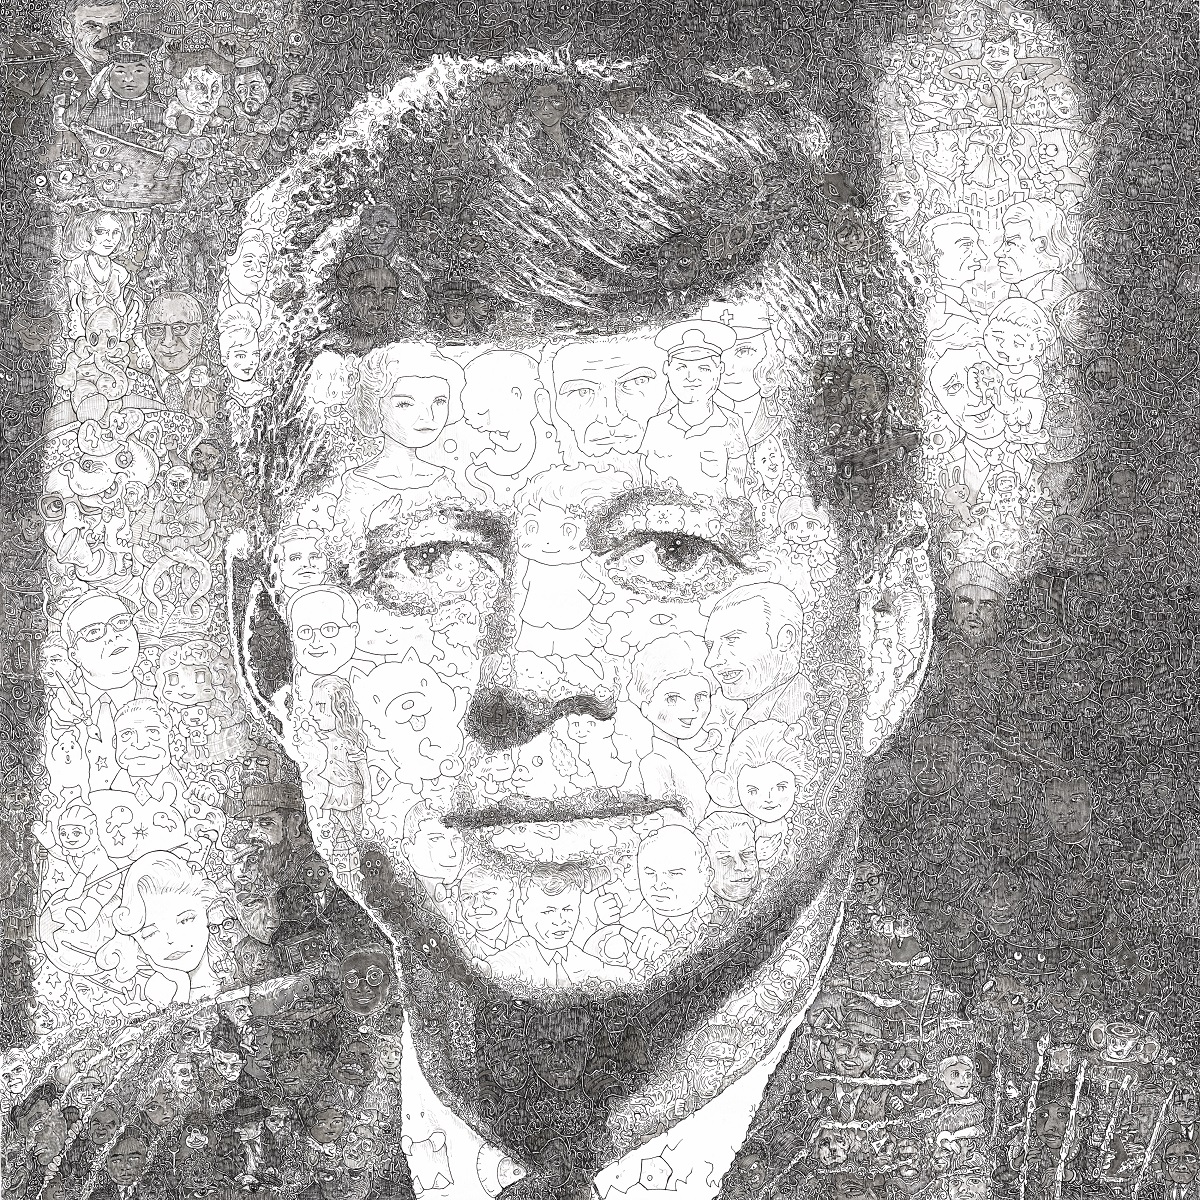 John F Kennedy